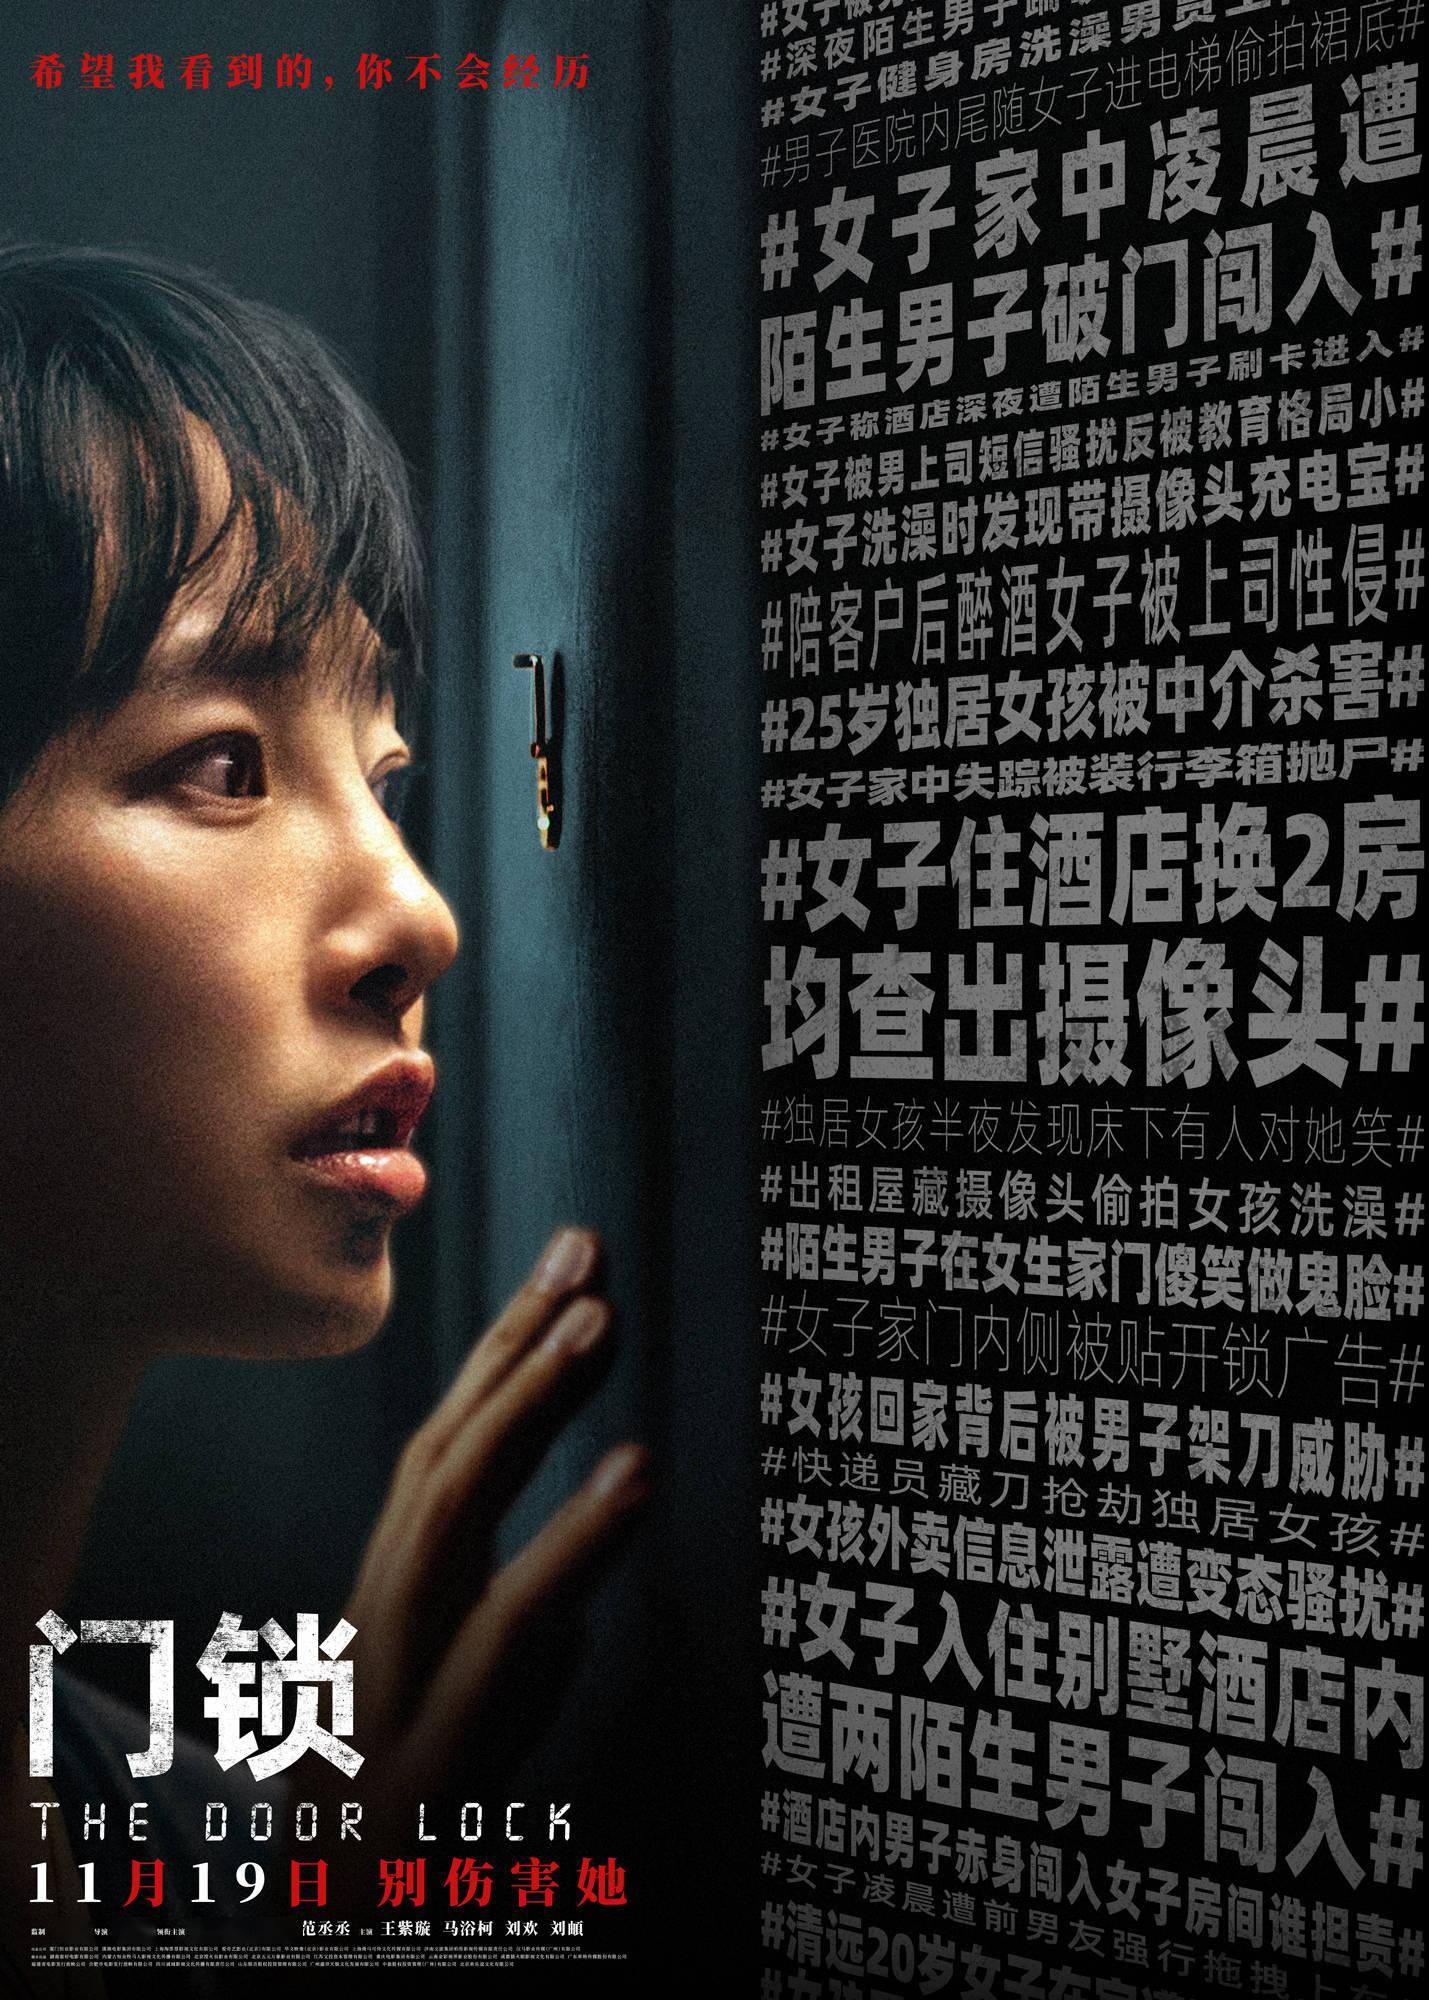 电影《门锁》独居入侵预告海报双发 扣问现实谁为女性安全买单